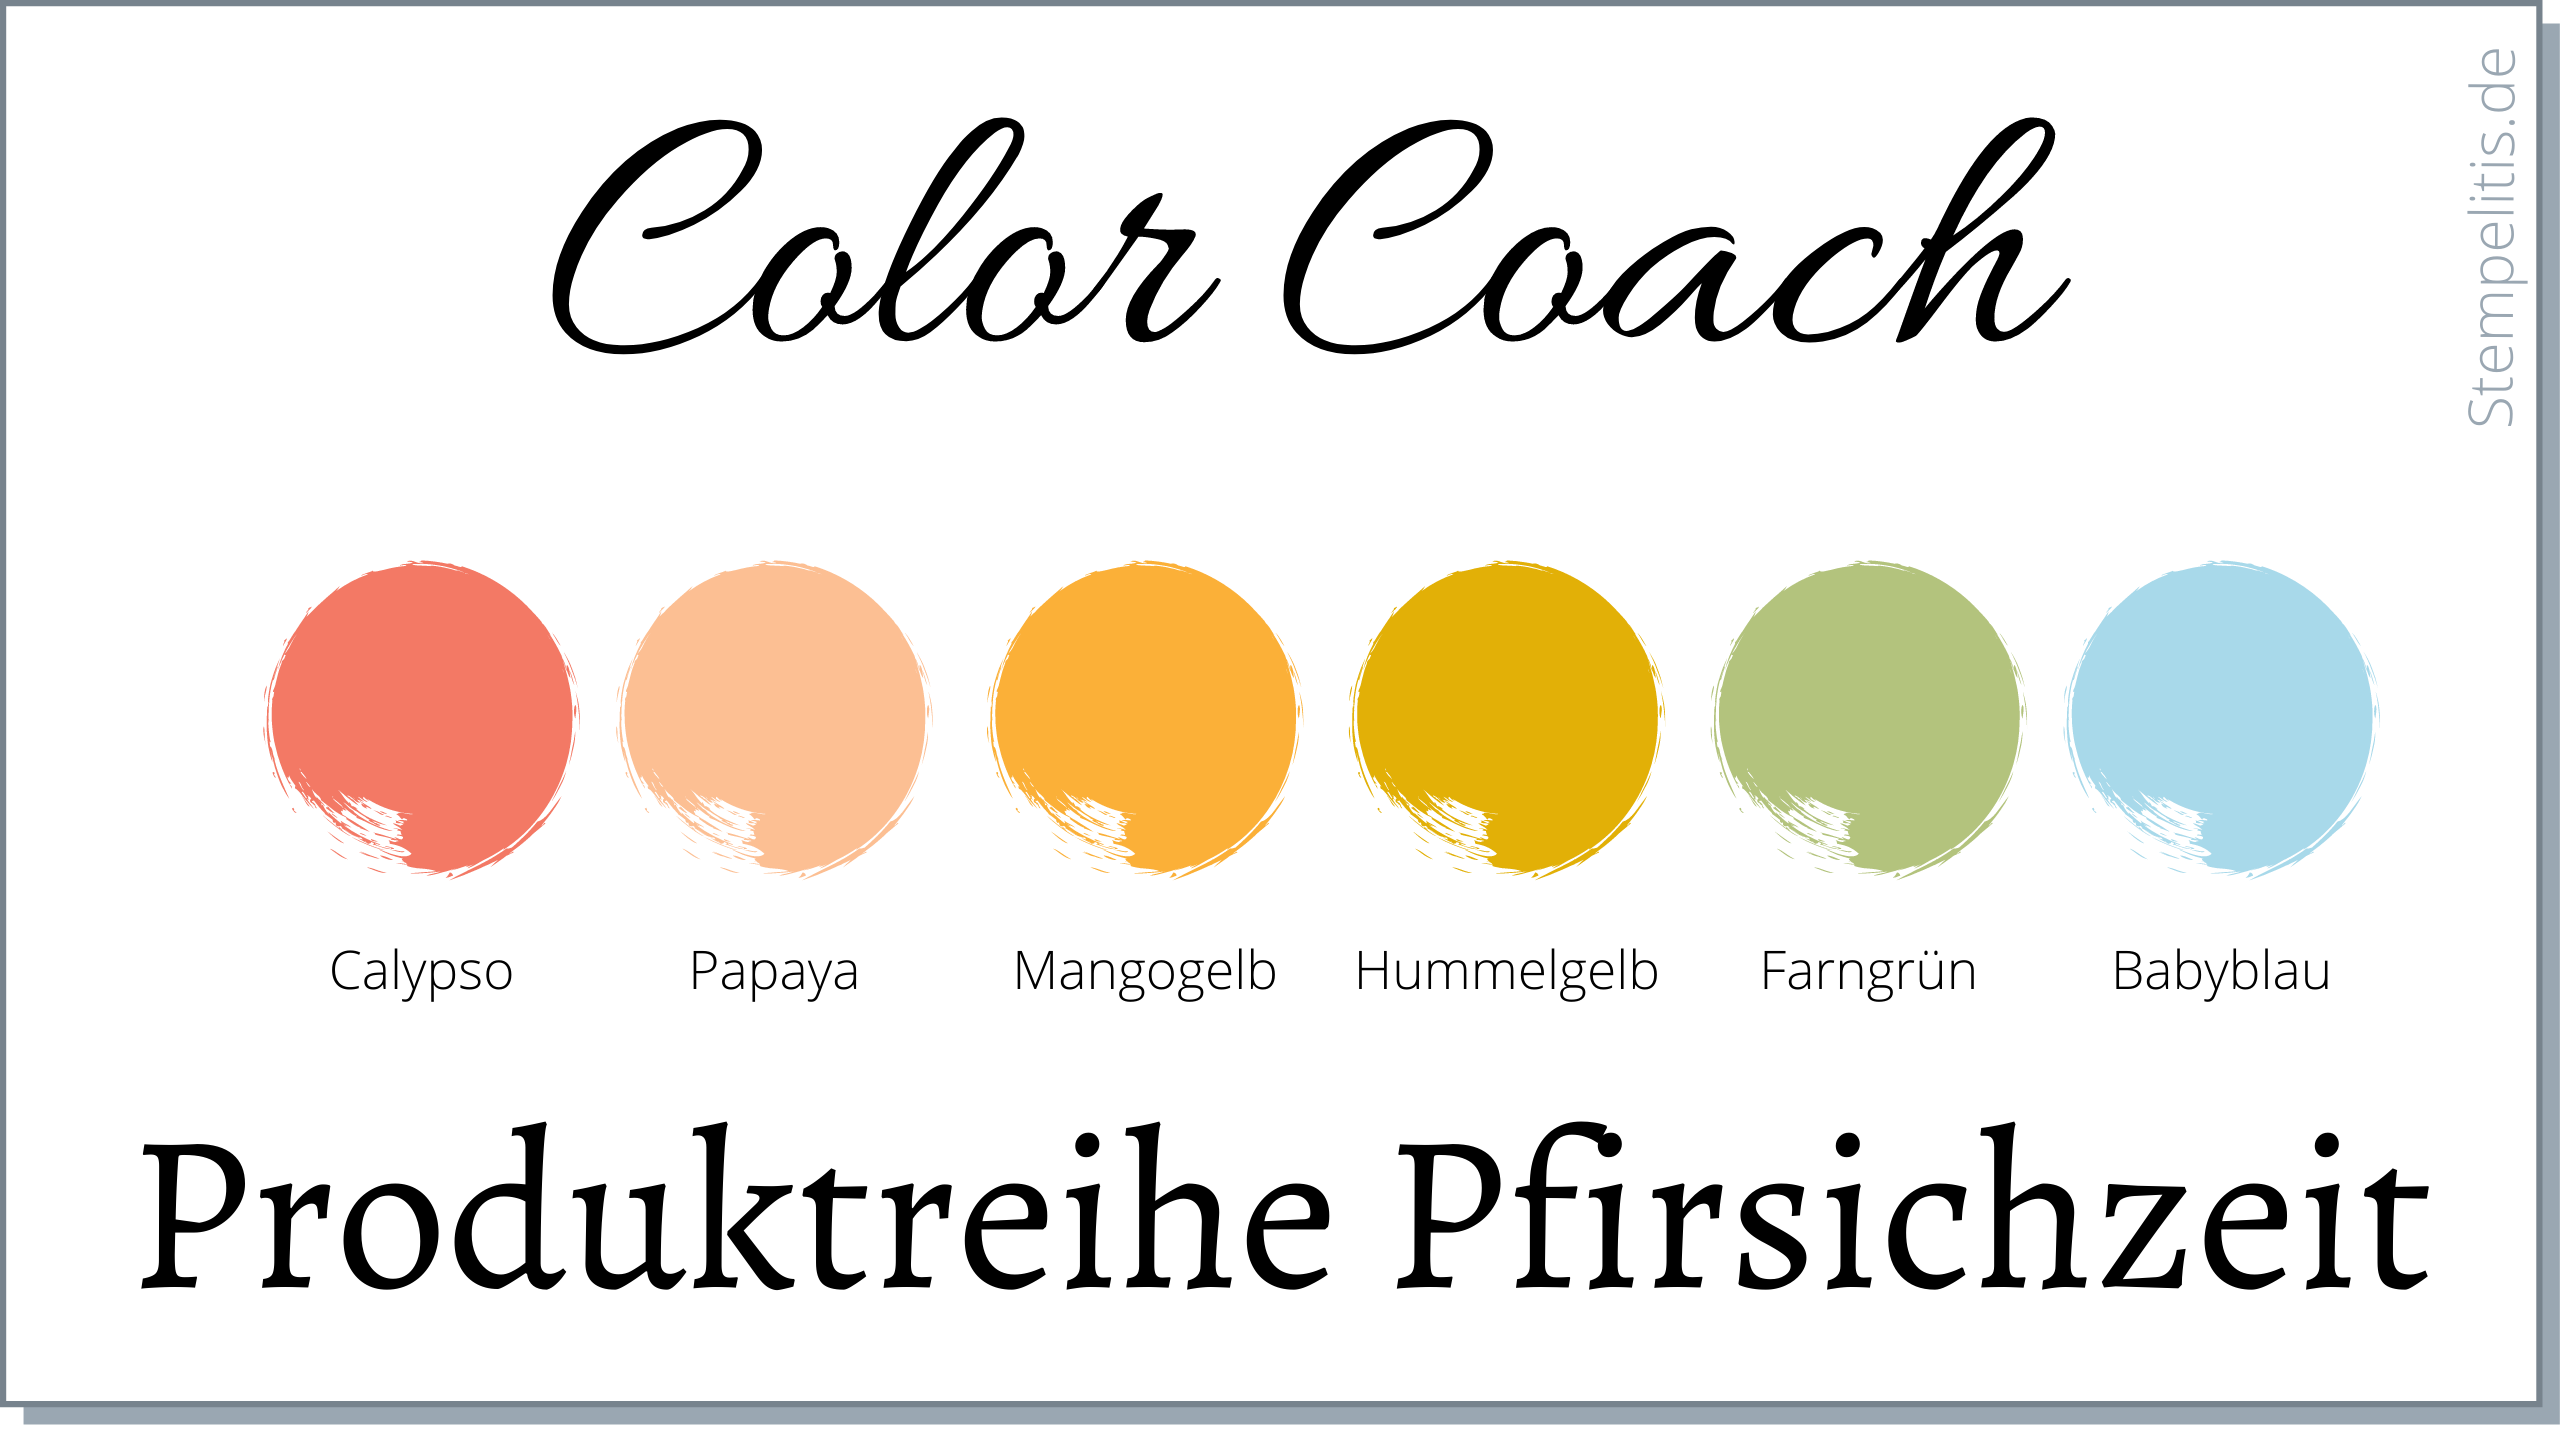 Color Coach Pfirsichzeit
